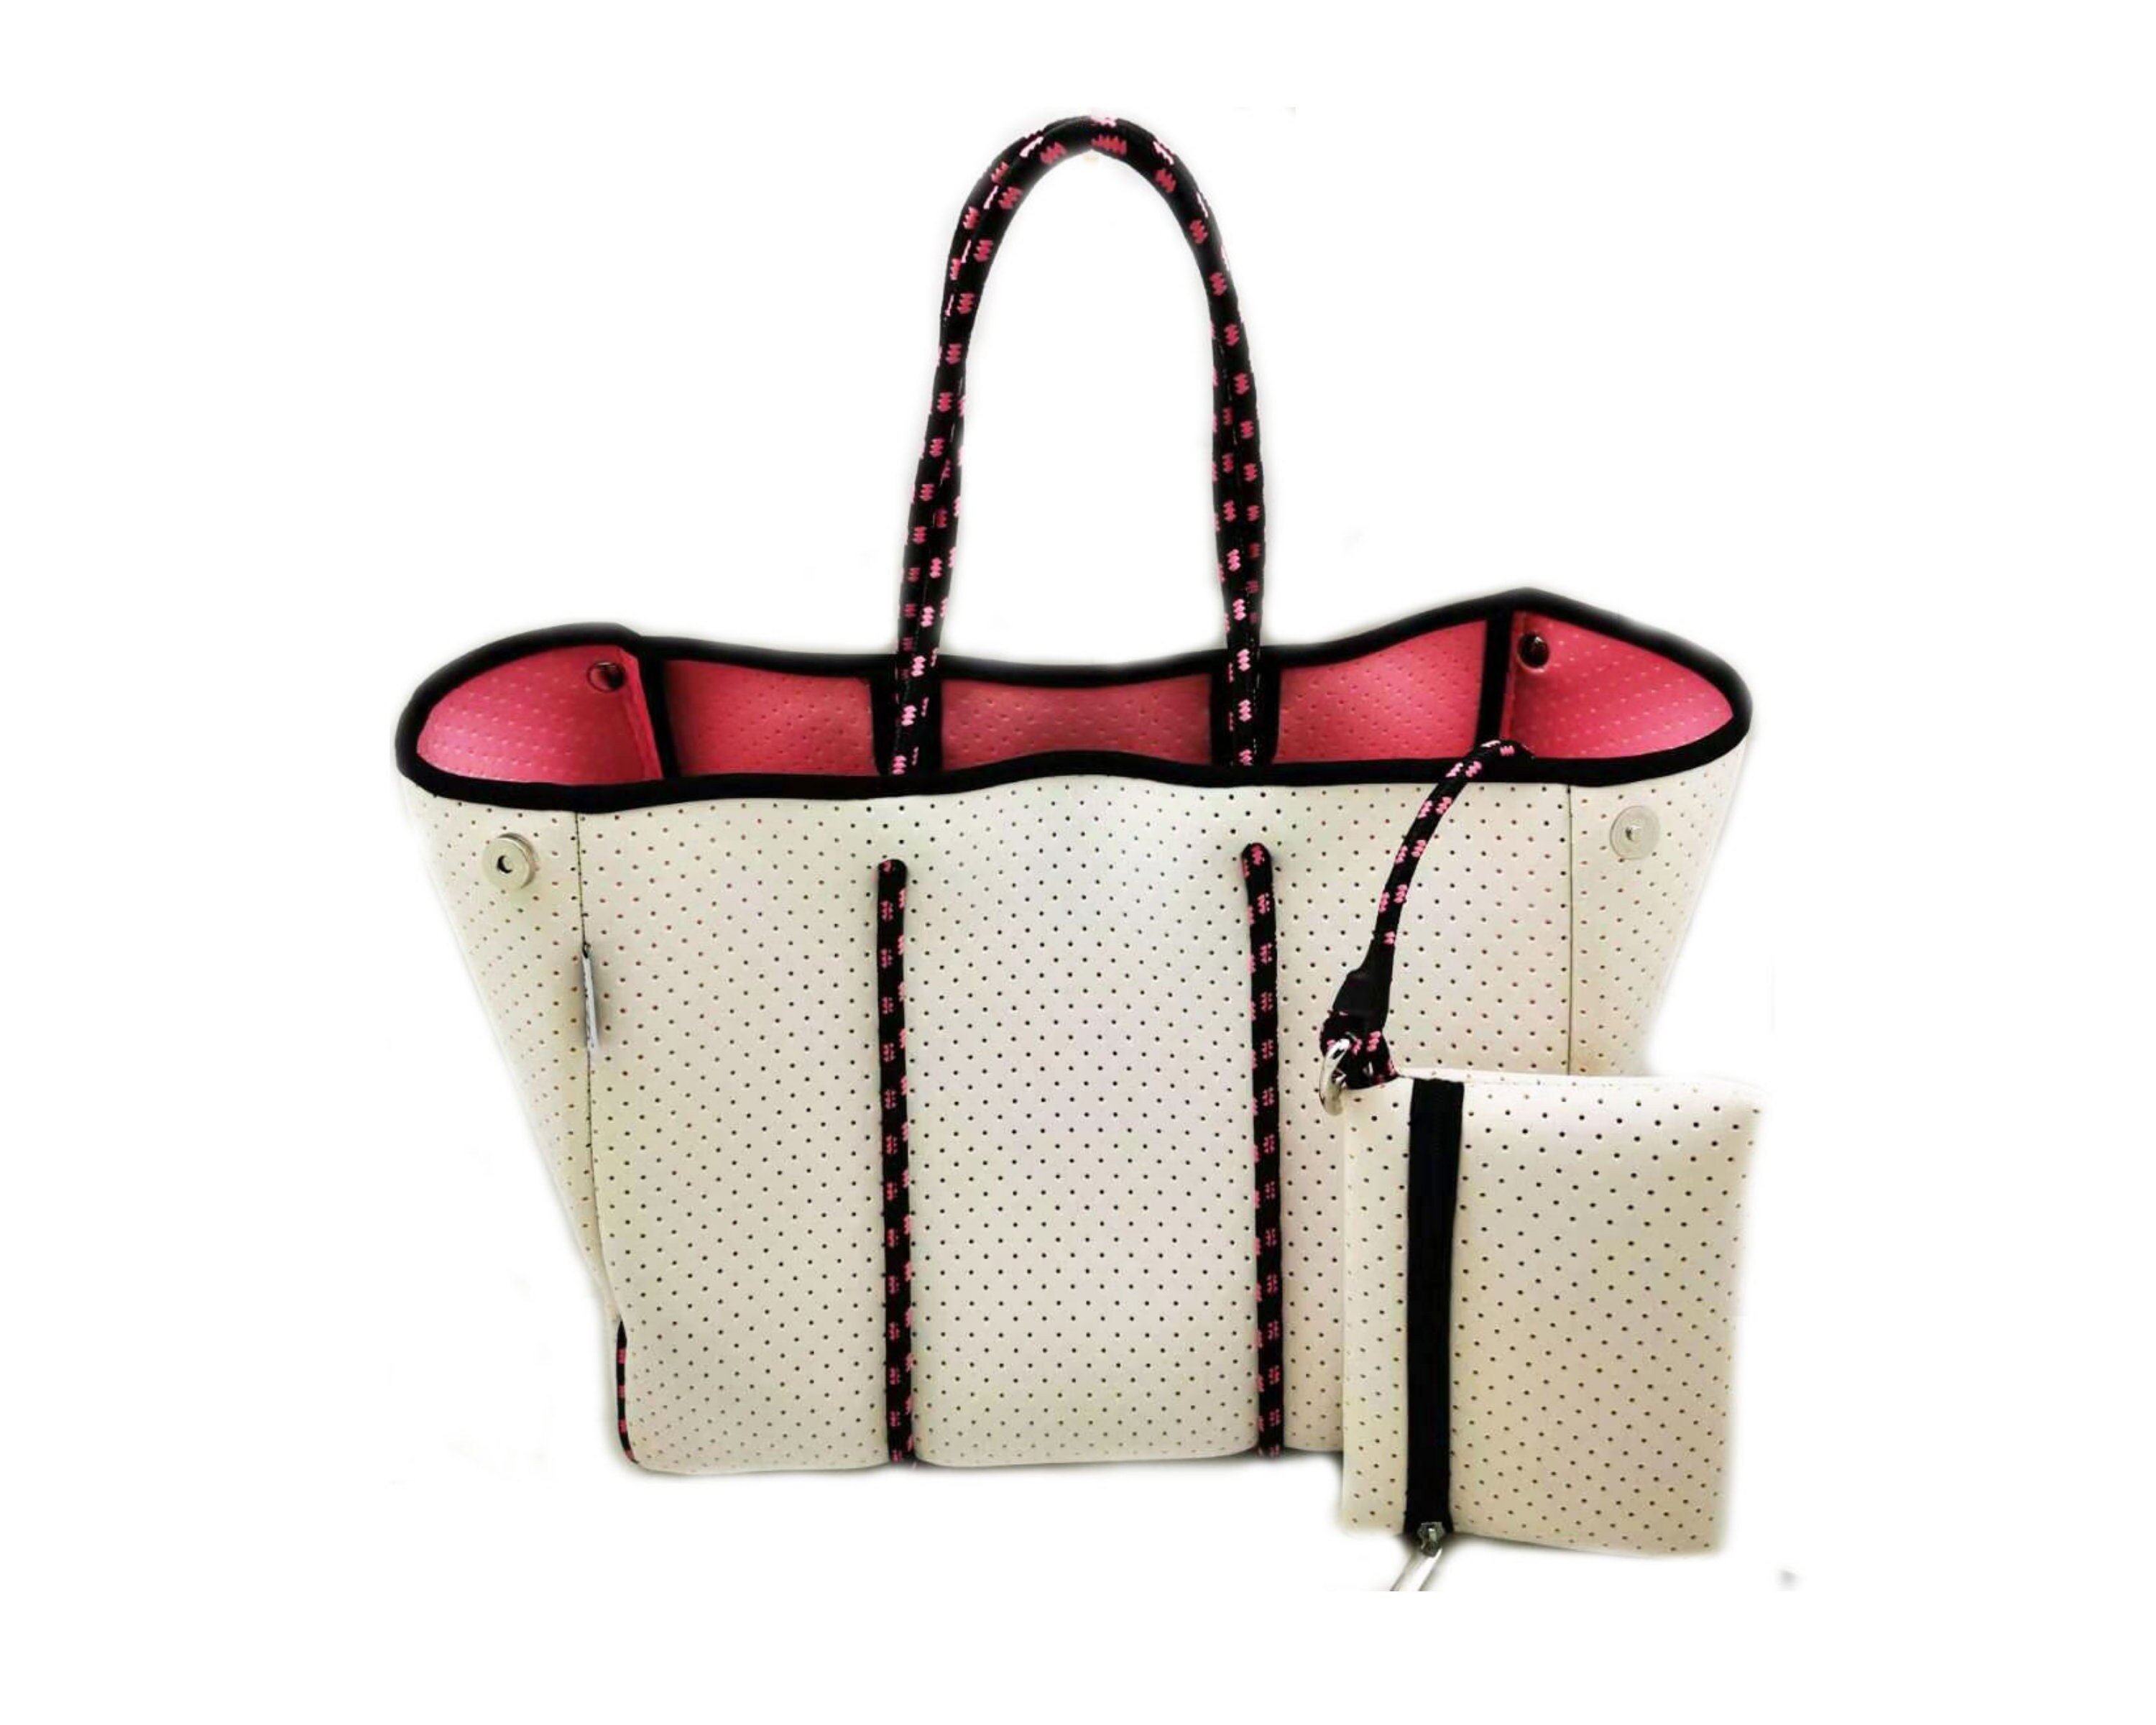 Neoprene Tote Bag Orange & Silver Pink Stripes by Dallas Hill Design